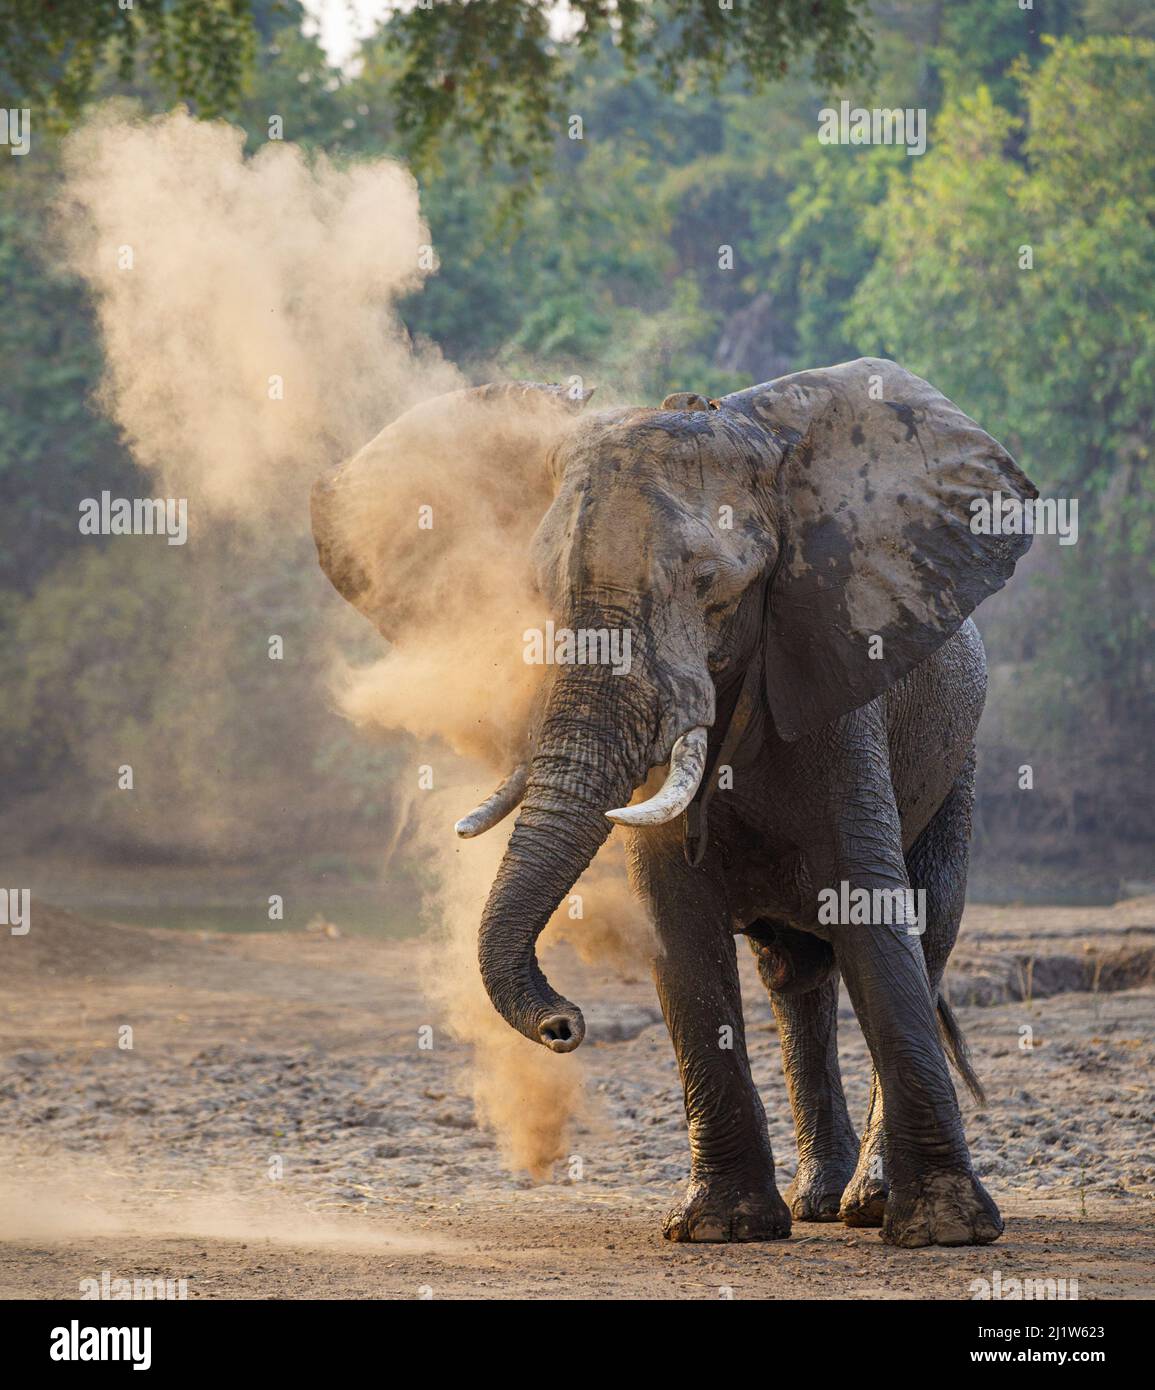 African elephant  (Loxodonta africana) dust bathing, Mana Pools National Park, Zimbabwe. Stock Photo